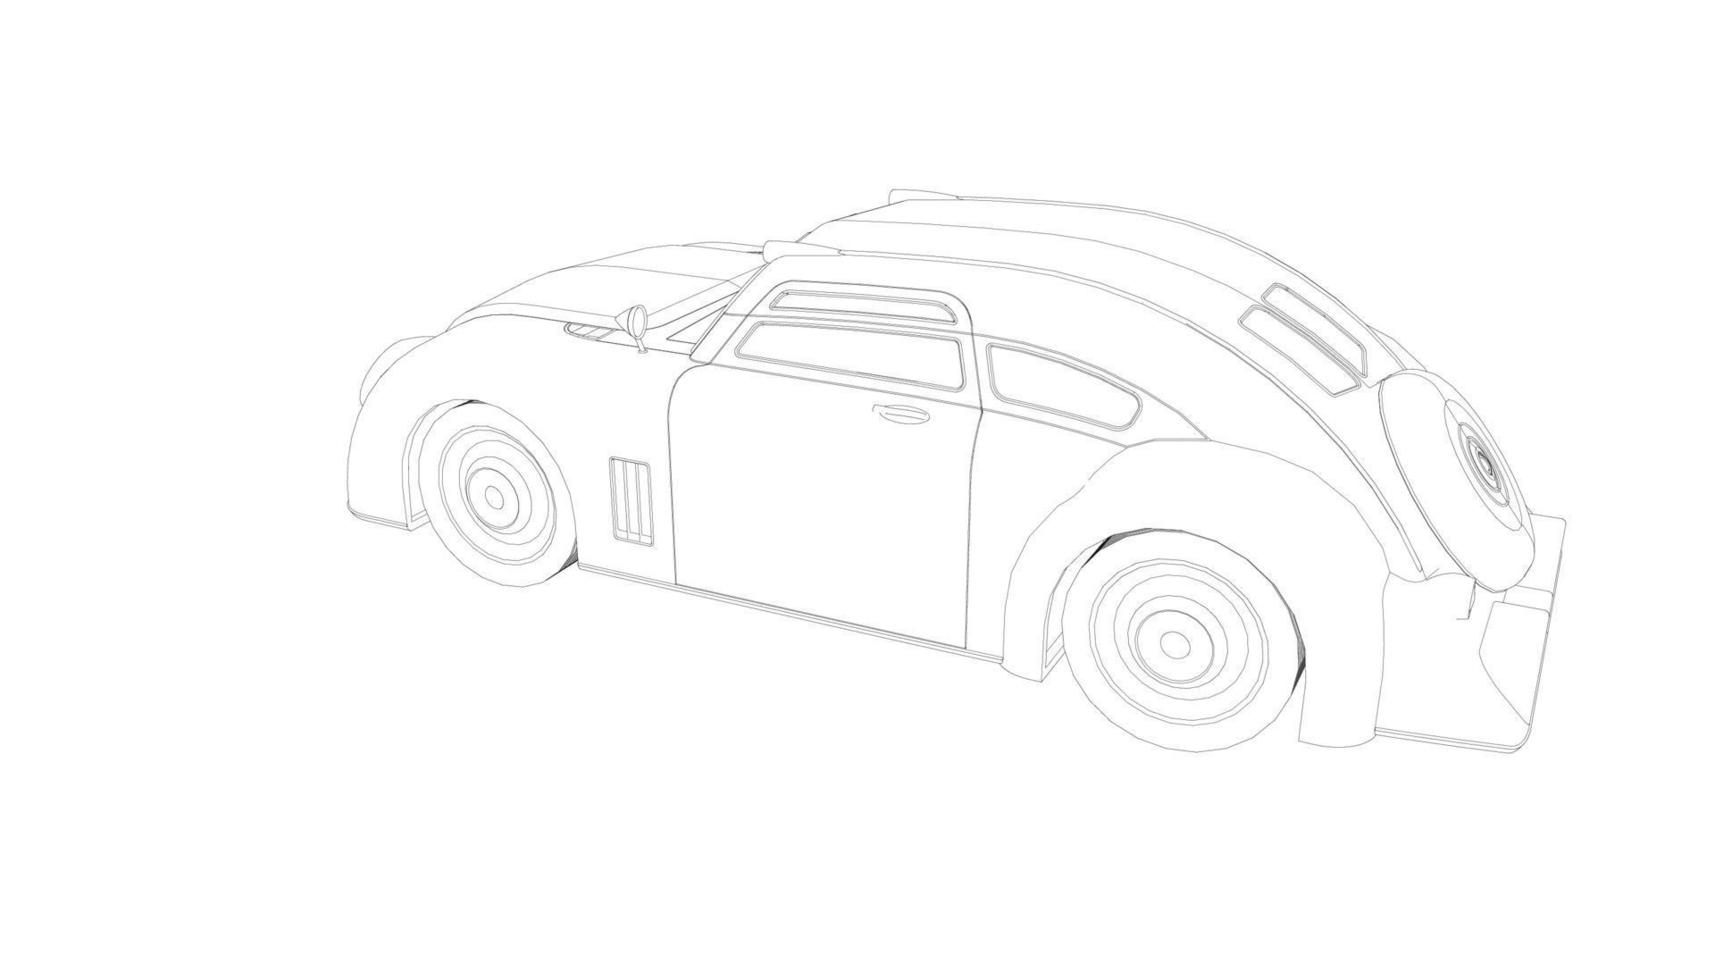 Old car design line art vector